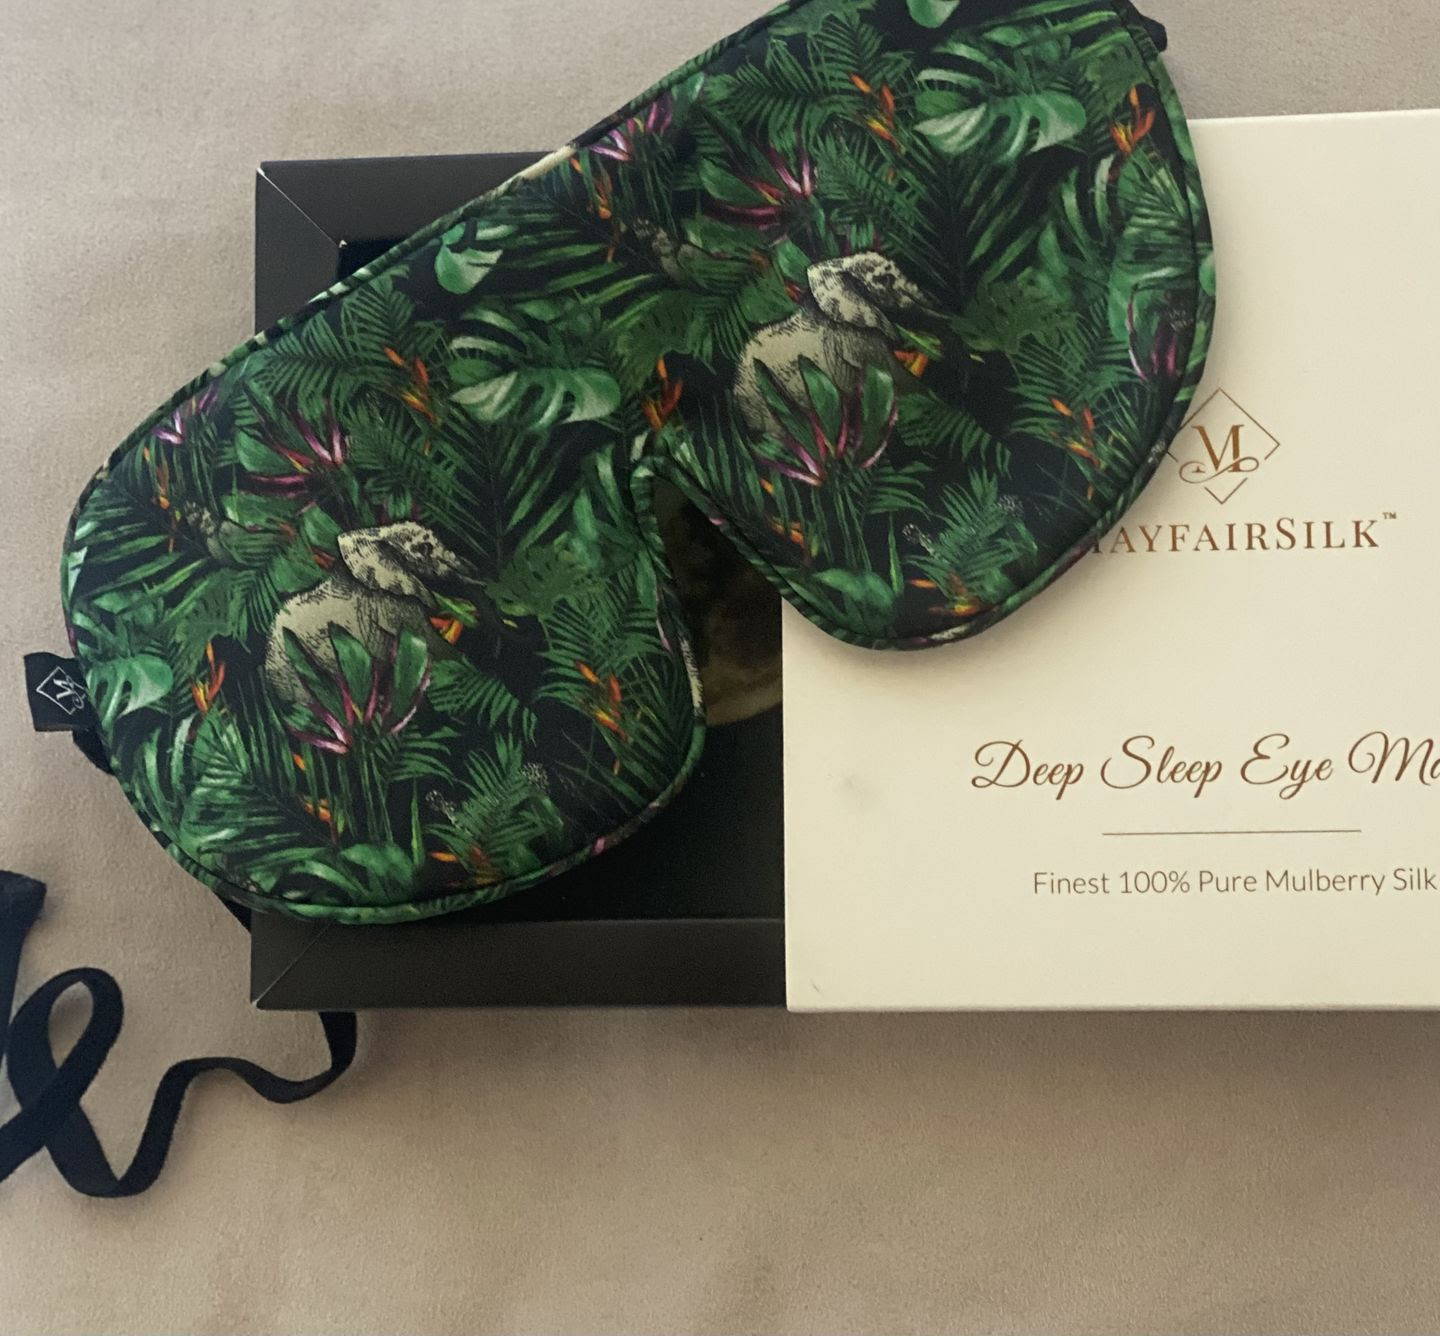 Jungle print Silk Sleep Mask in a gift box 